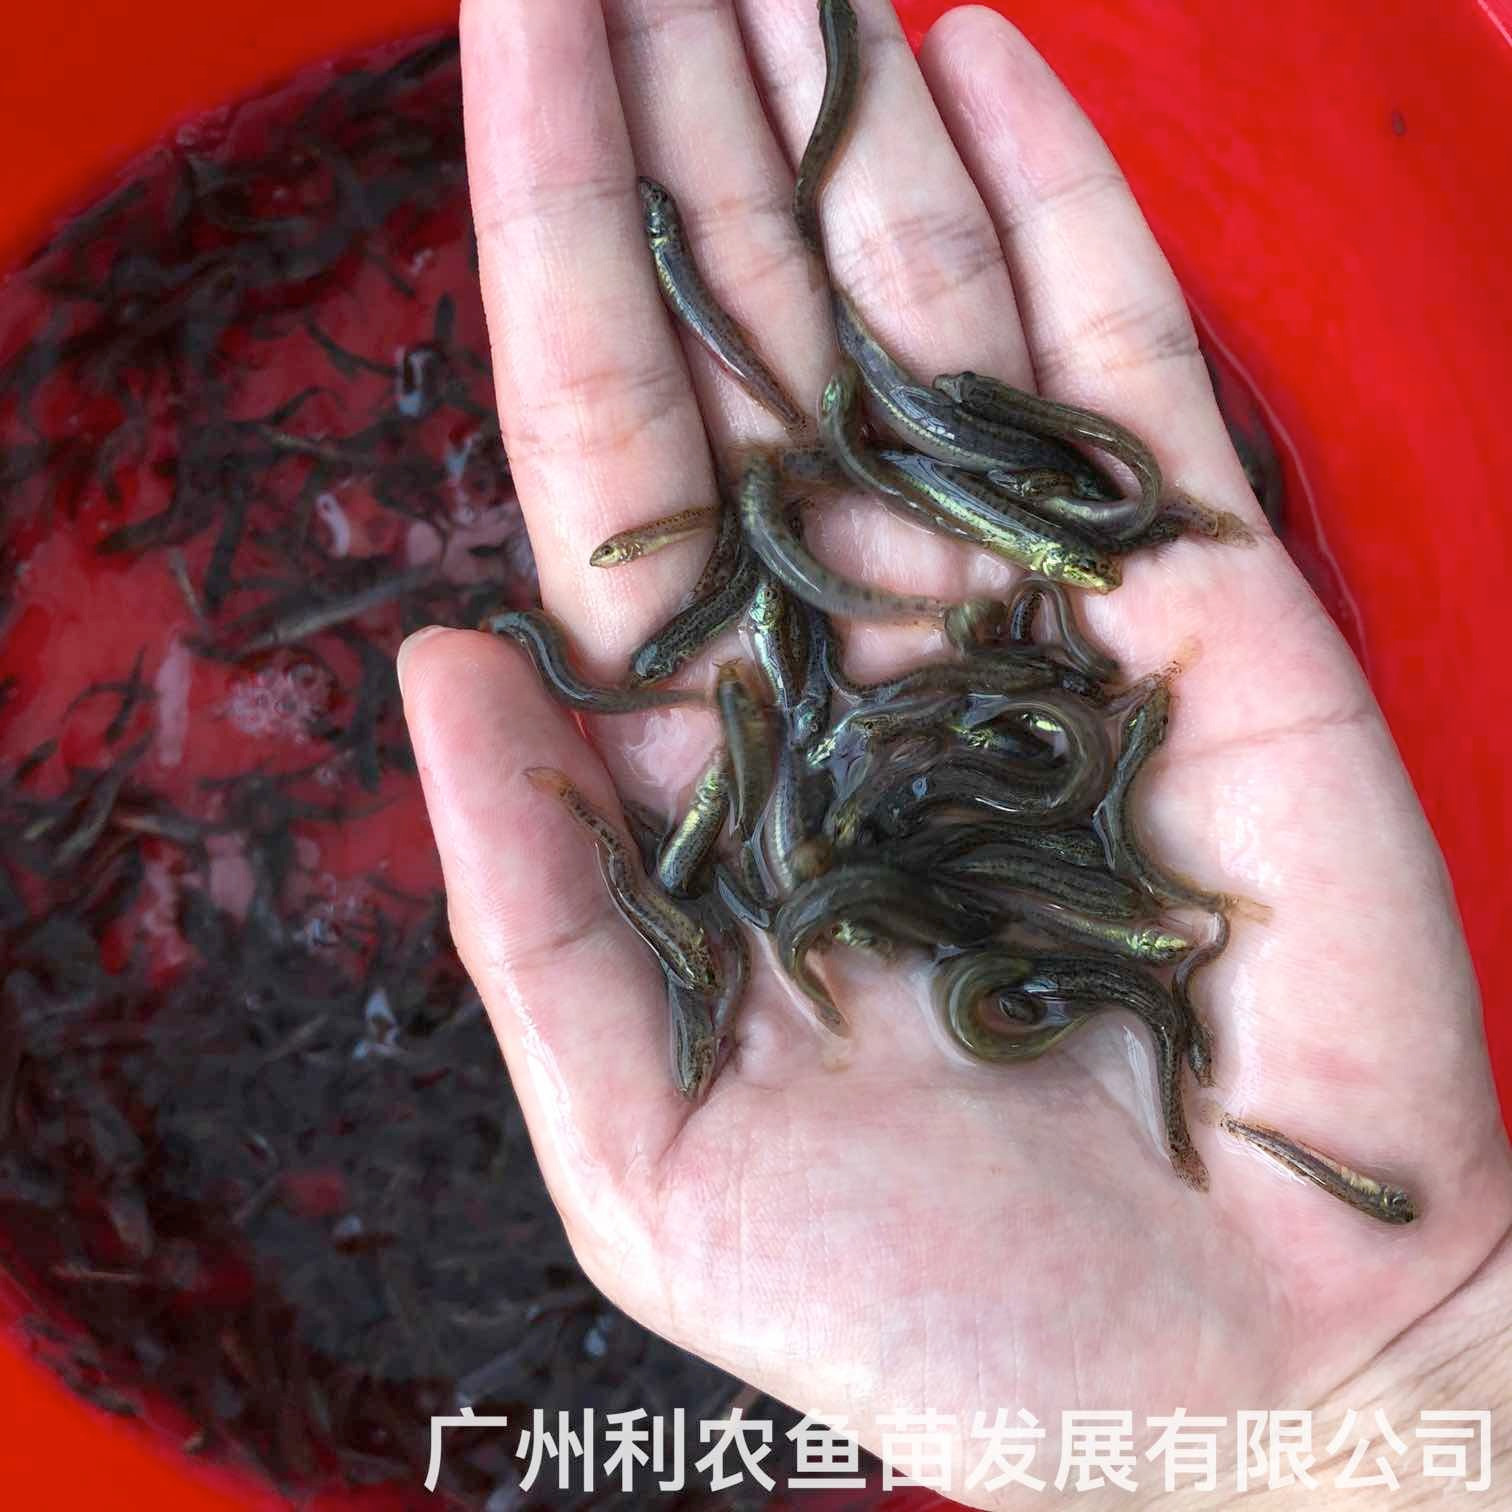 广西玉林台湾泥鳅苗出售出售广西防城港泥鳅鱼苗批发养殖基地